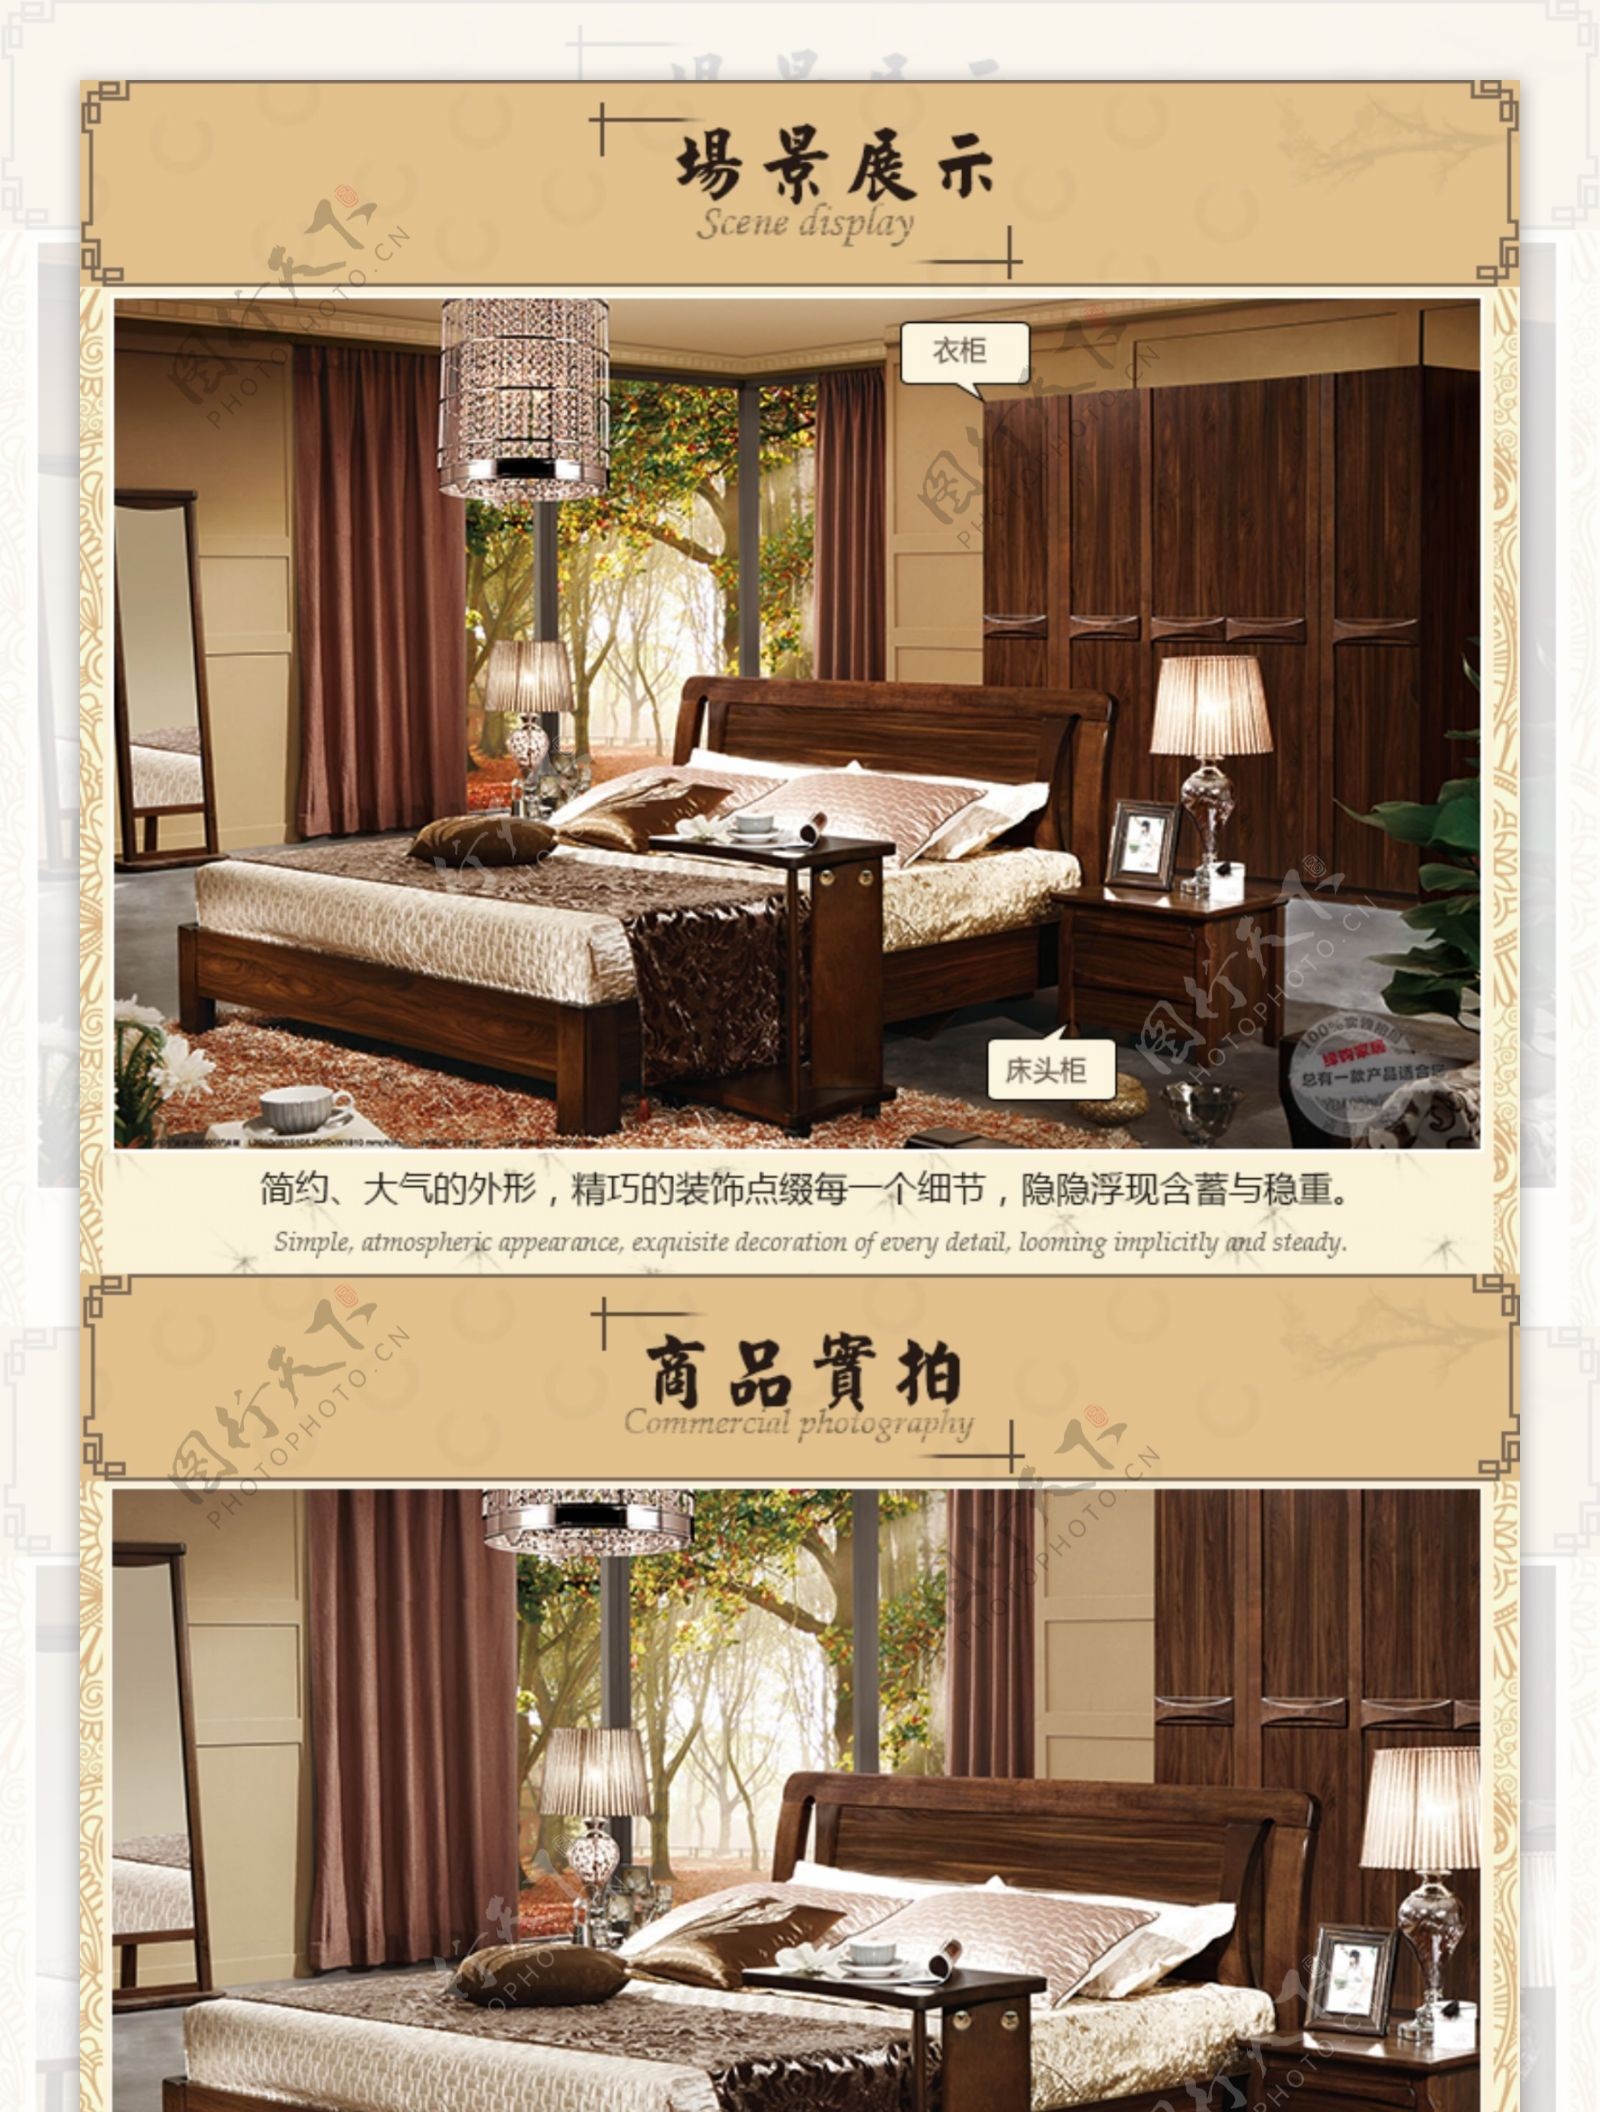 中式家具详情图床宝贝详情页